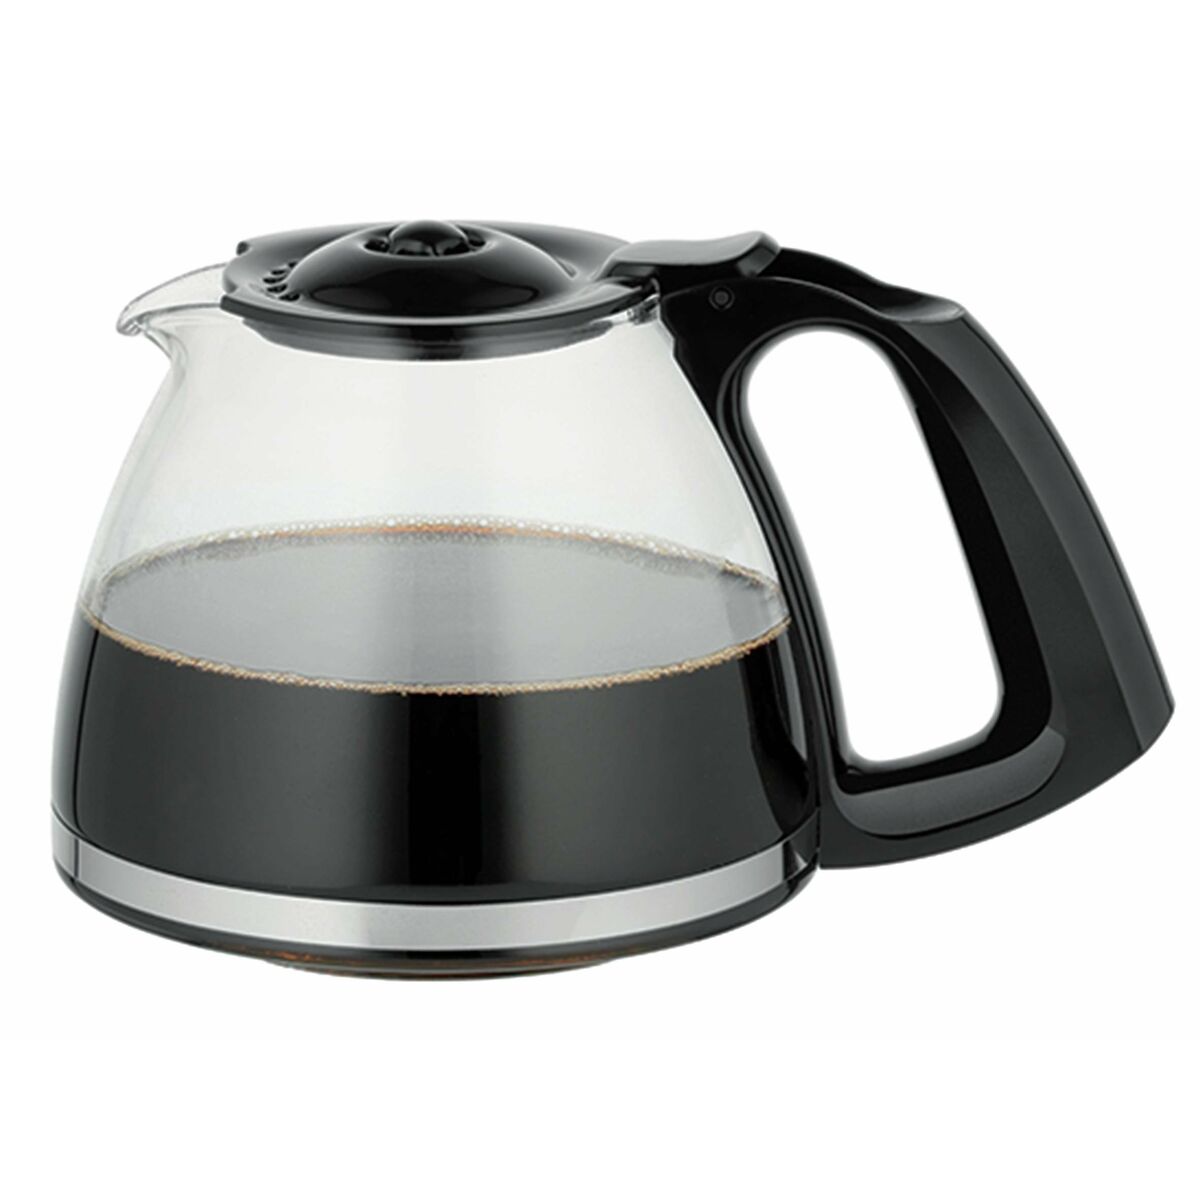 Tippa kahvinkeitin Moulinex FG362810 1,25 L 1000 W 1,25 L